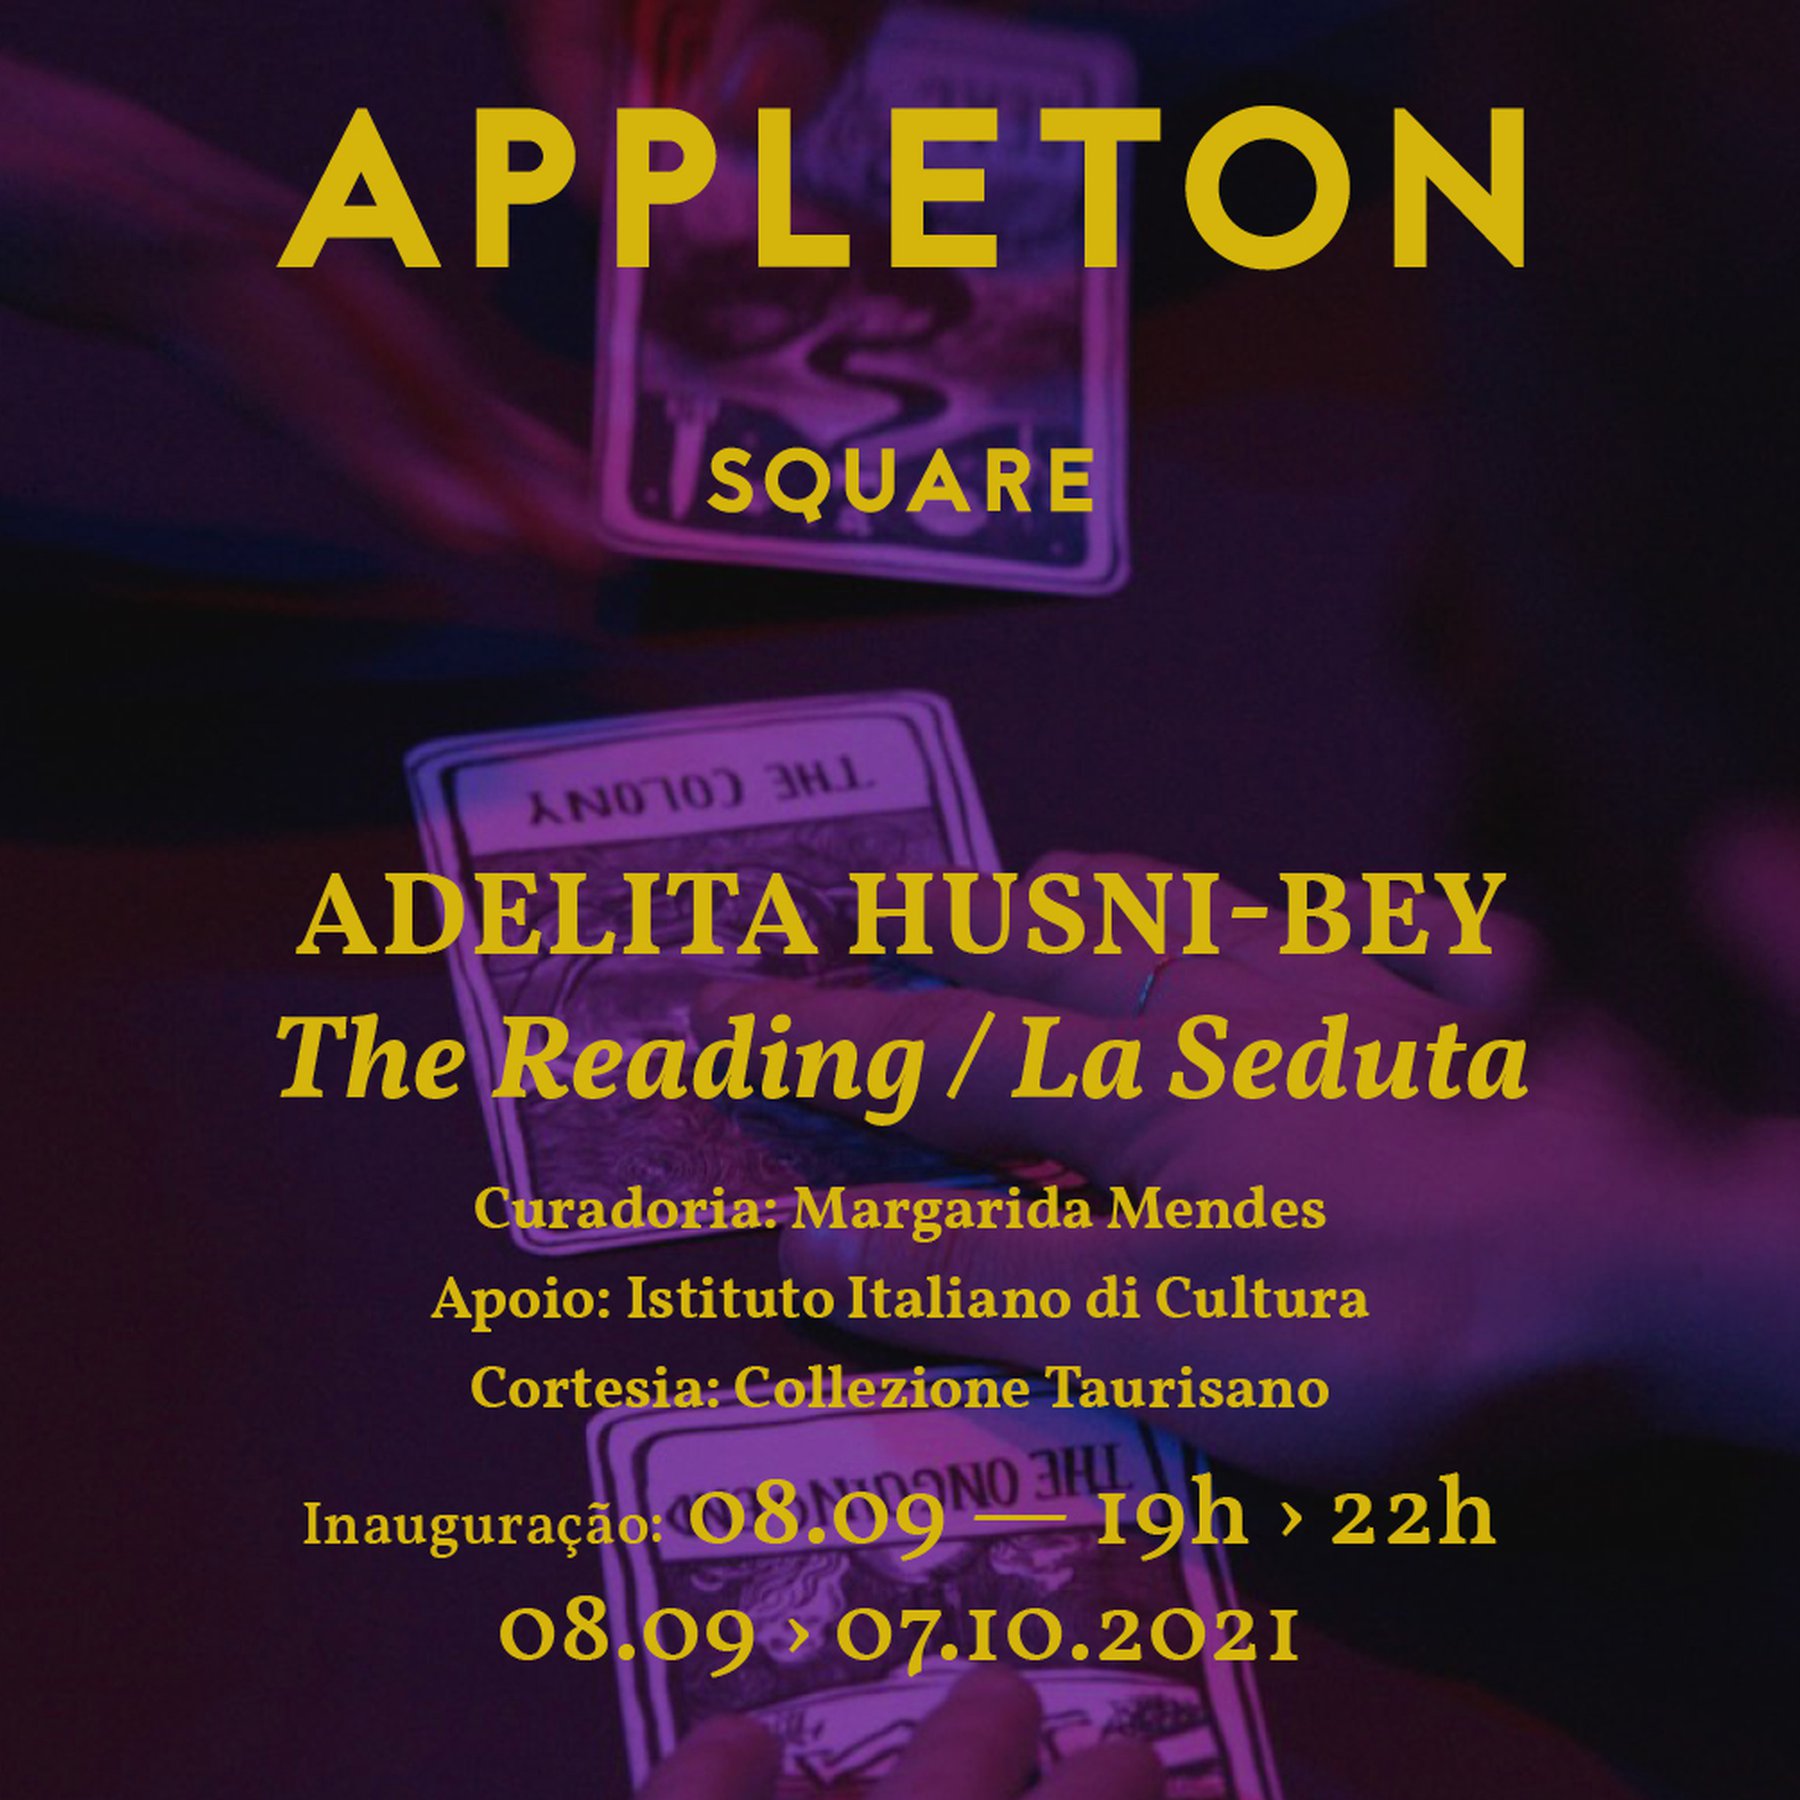 The reading / La seduta